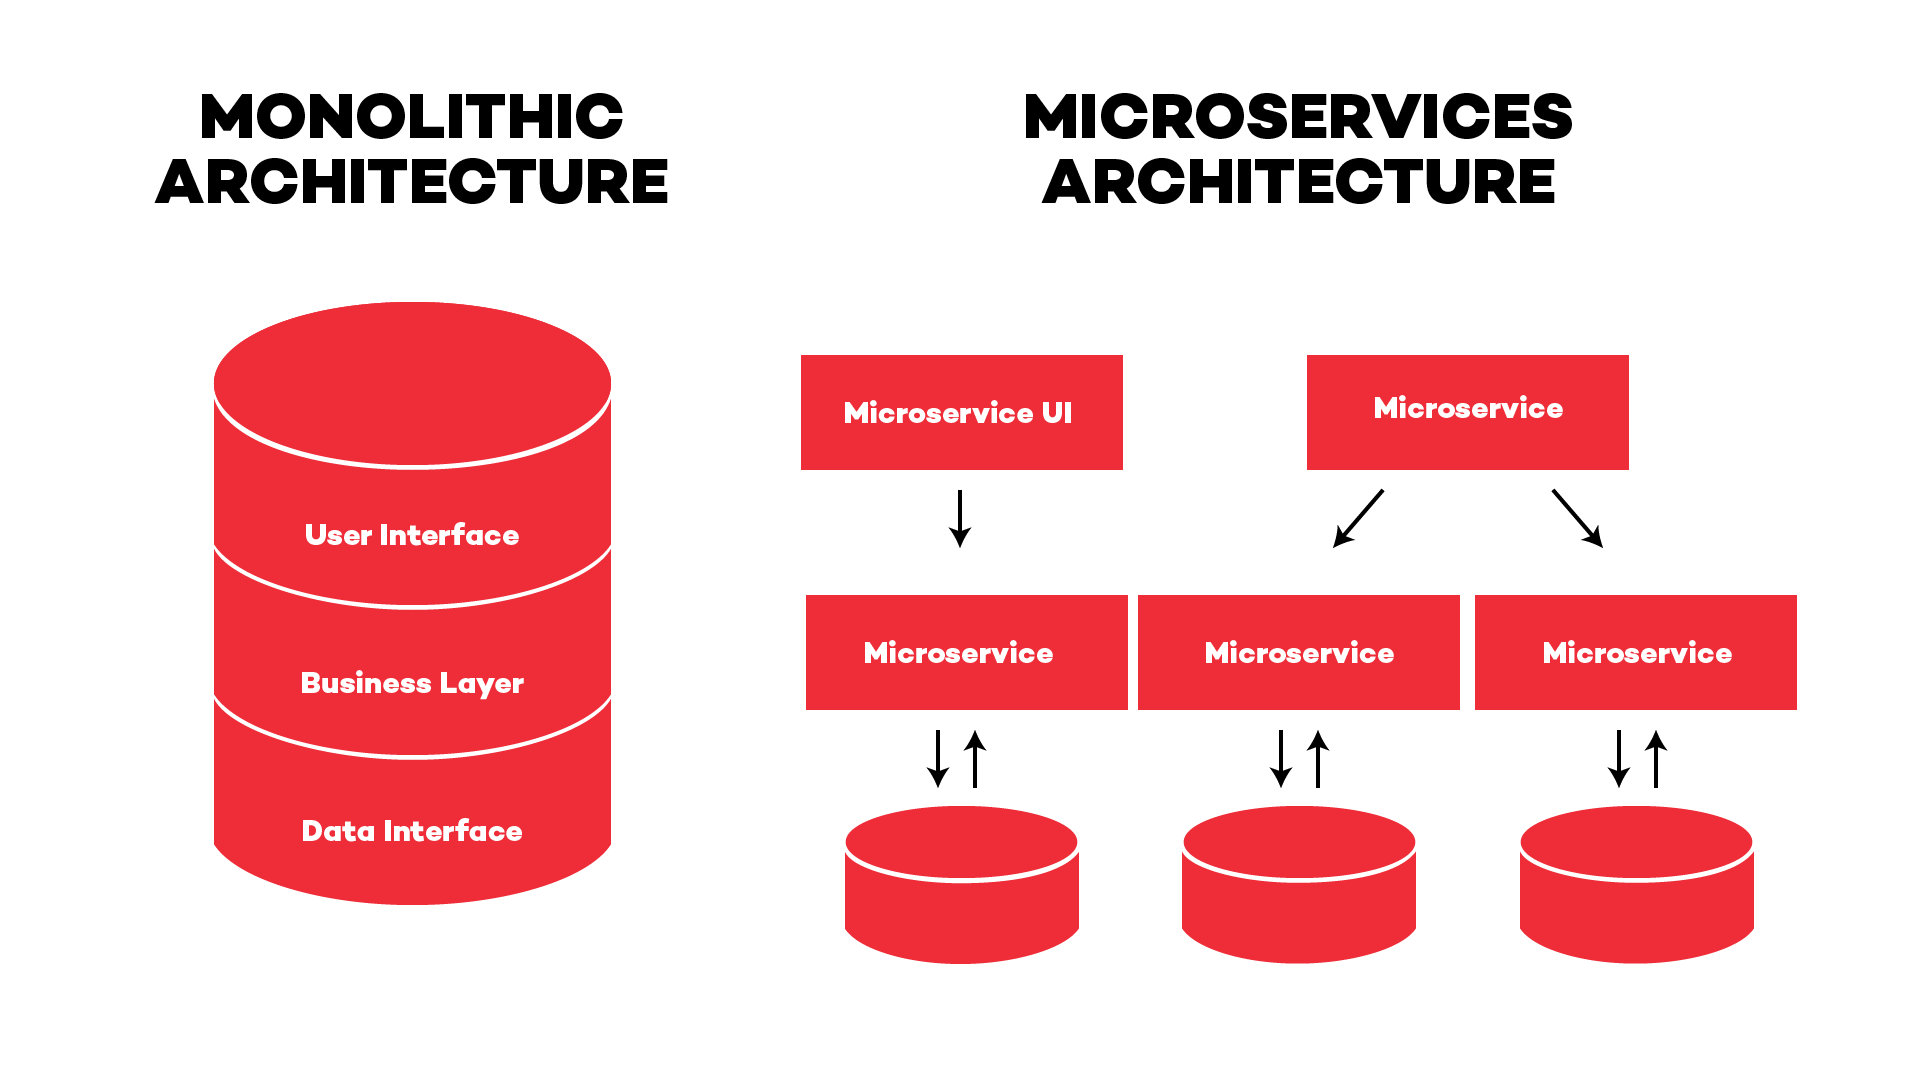 Monolithic architecture vs Microservice architecture